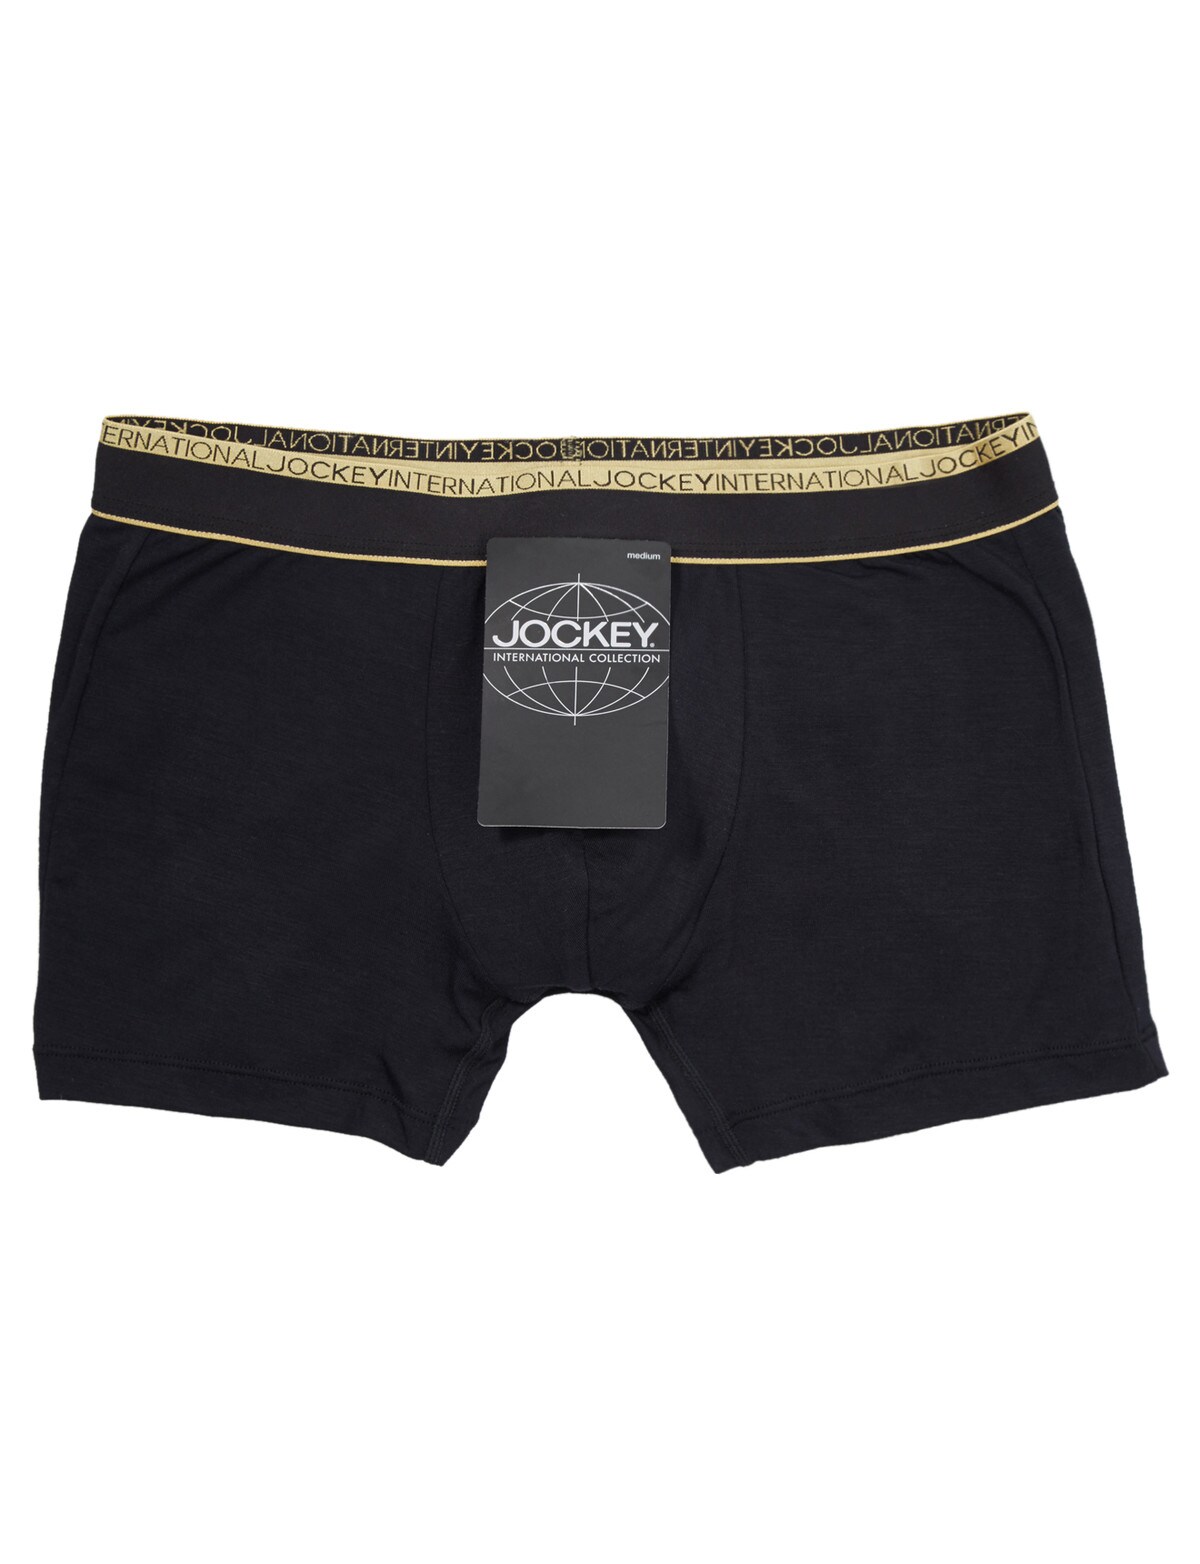 Jockey Monaco Trunk - Underwear